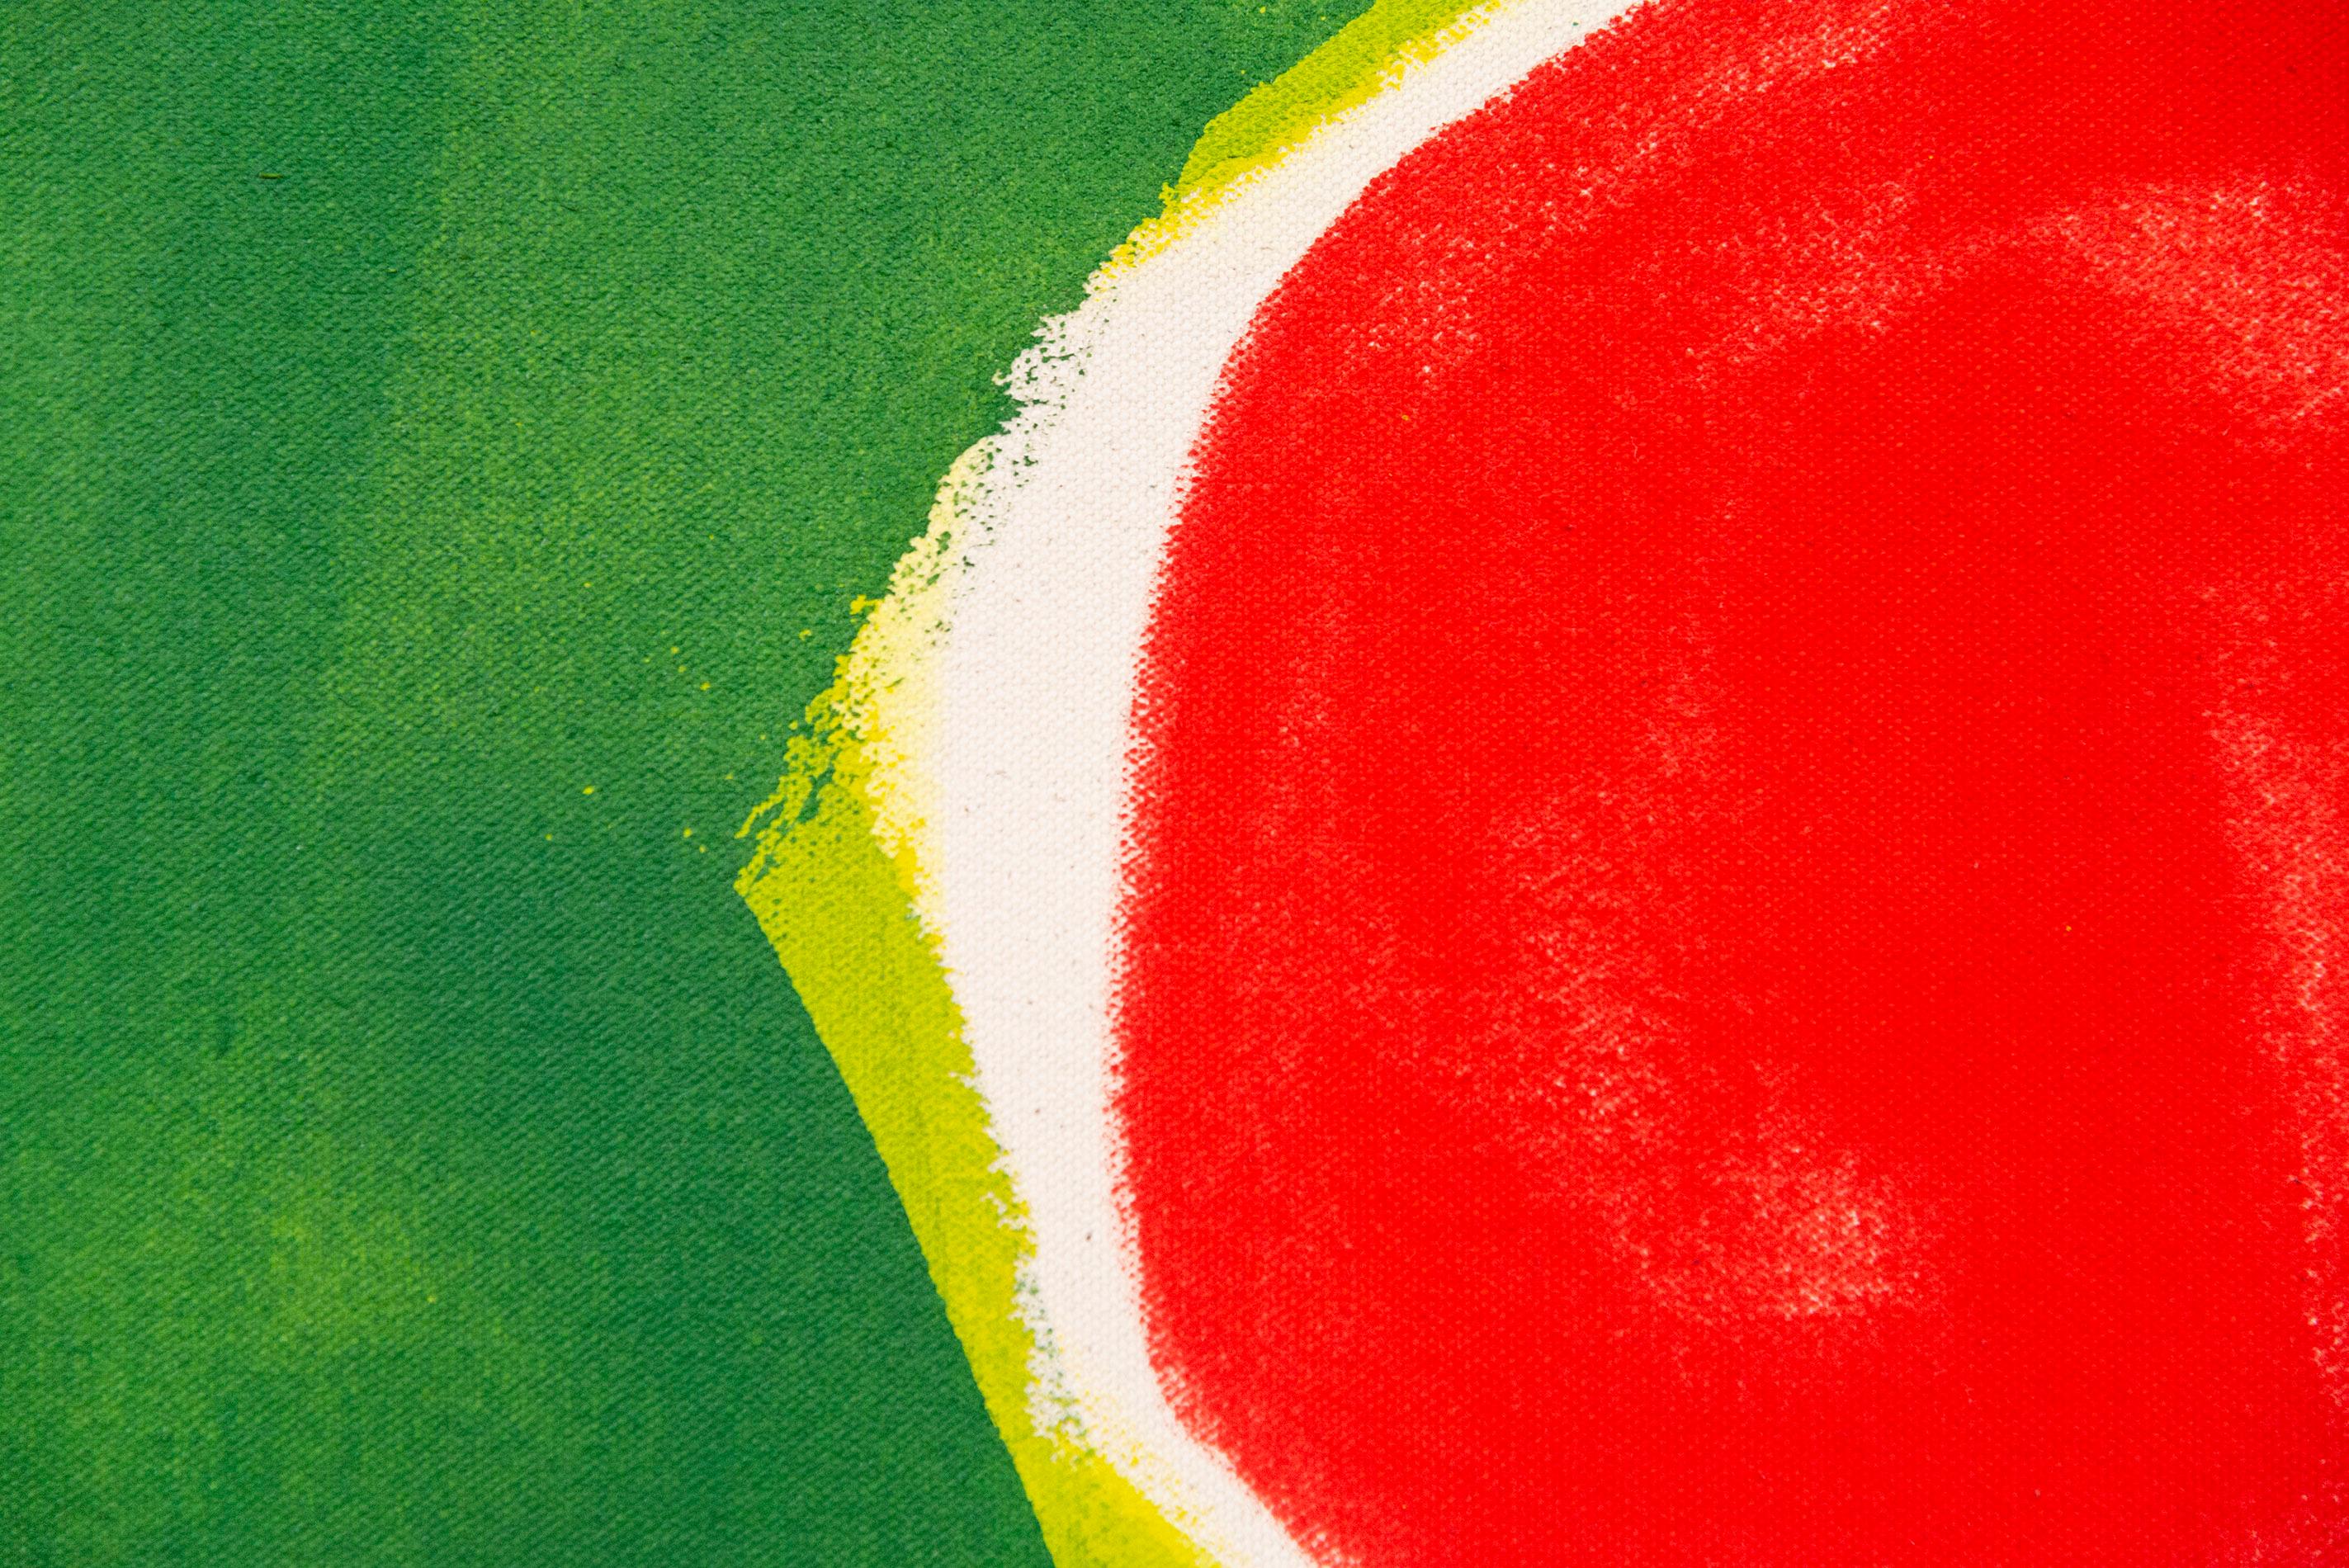 Cette peinture joyeuse et colorée est l'œuvre de l'un des meilleurs paysagistes canadiens, Pat Service.

Ici, le jardinier passionné utilise des couleurs vives - rouge, jaune et blanc - sur un fond vert vif et des formes minimalistes pour créer une